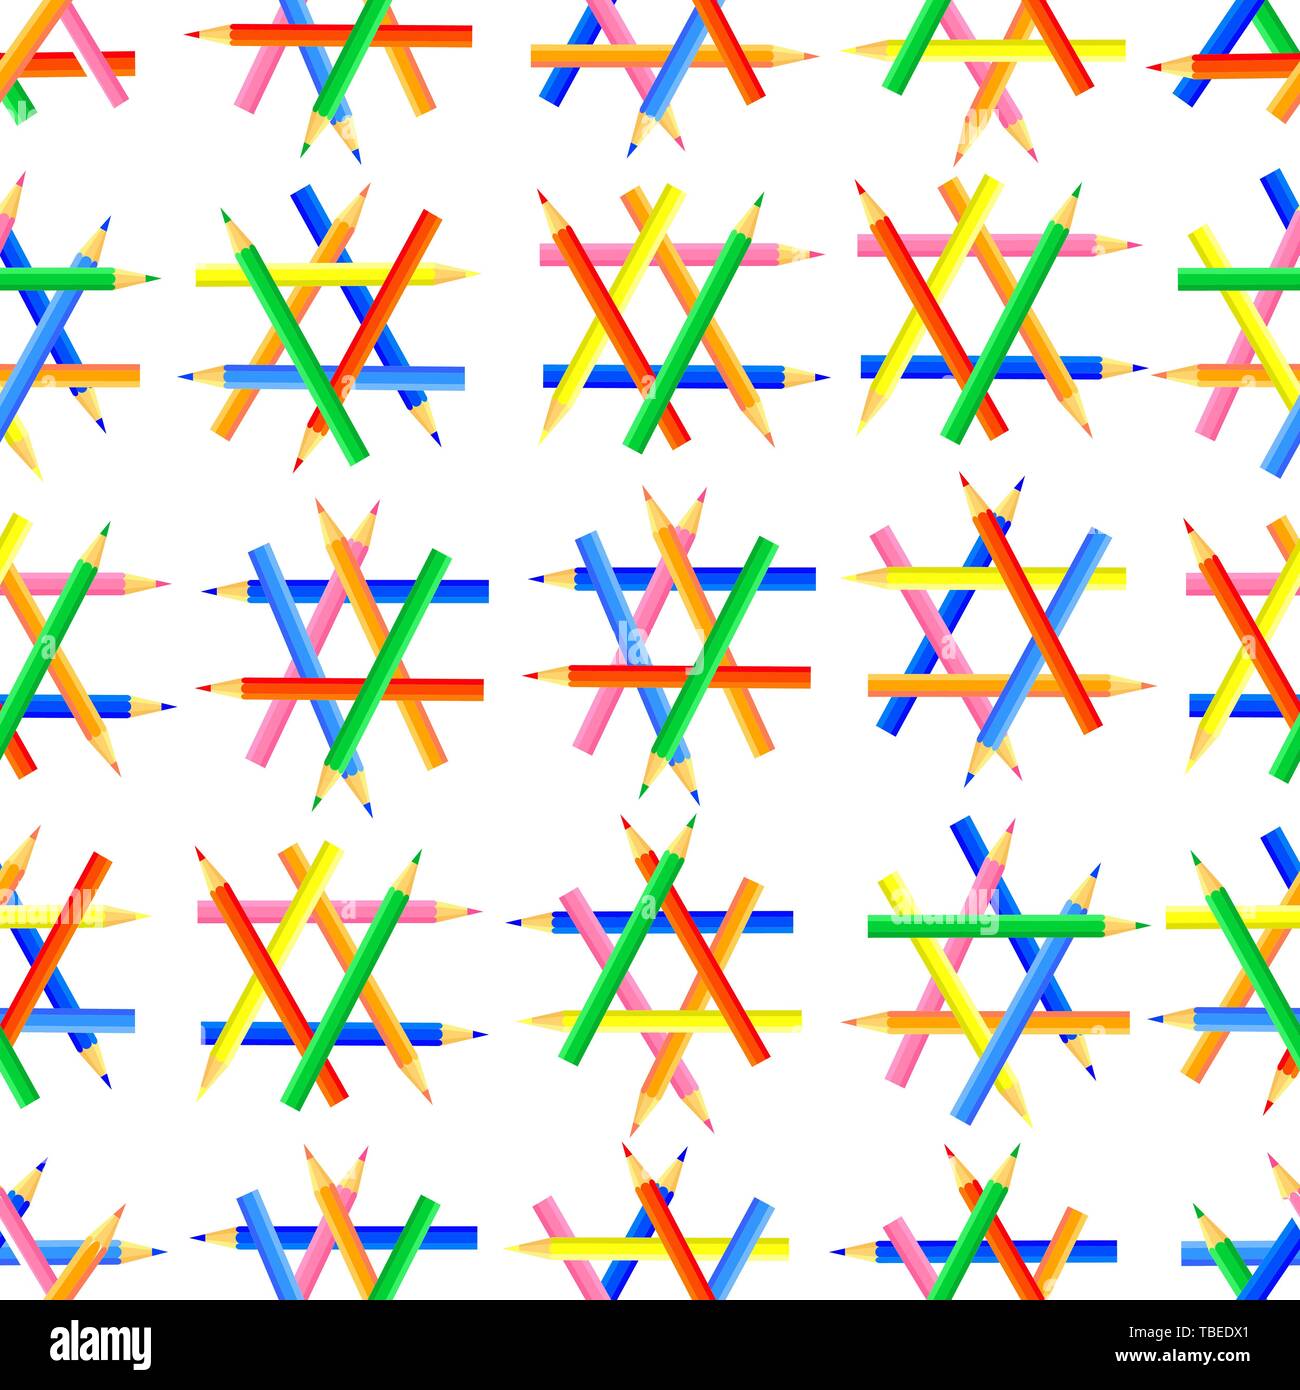 Vector seamless pattern. Forme esagonali creato da affilare matite colorate. Un buon sito sfondo per gli artisti e i bambini. Illustrazione Vettoriale